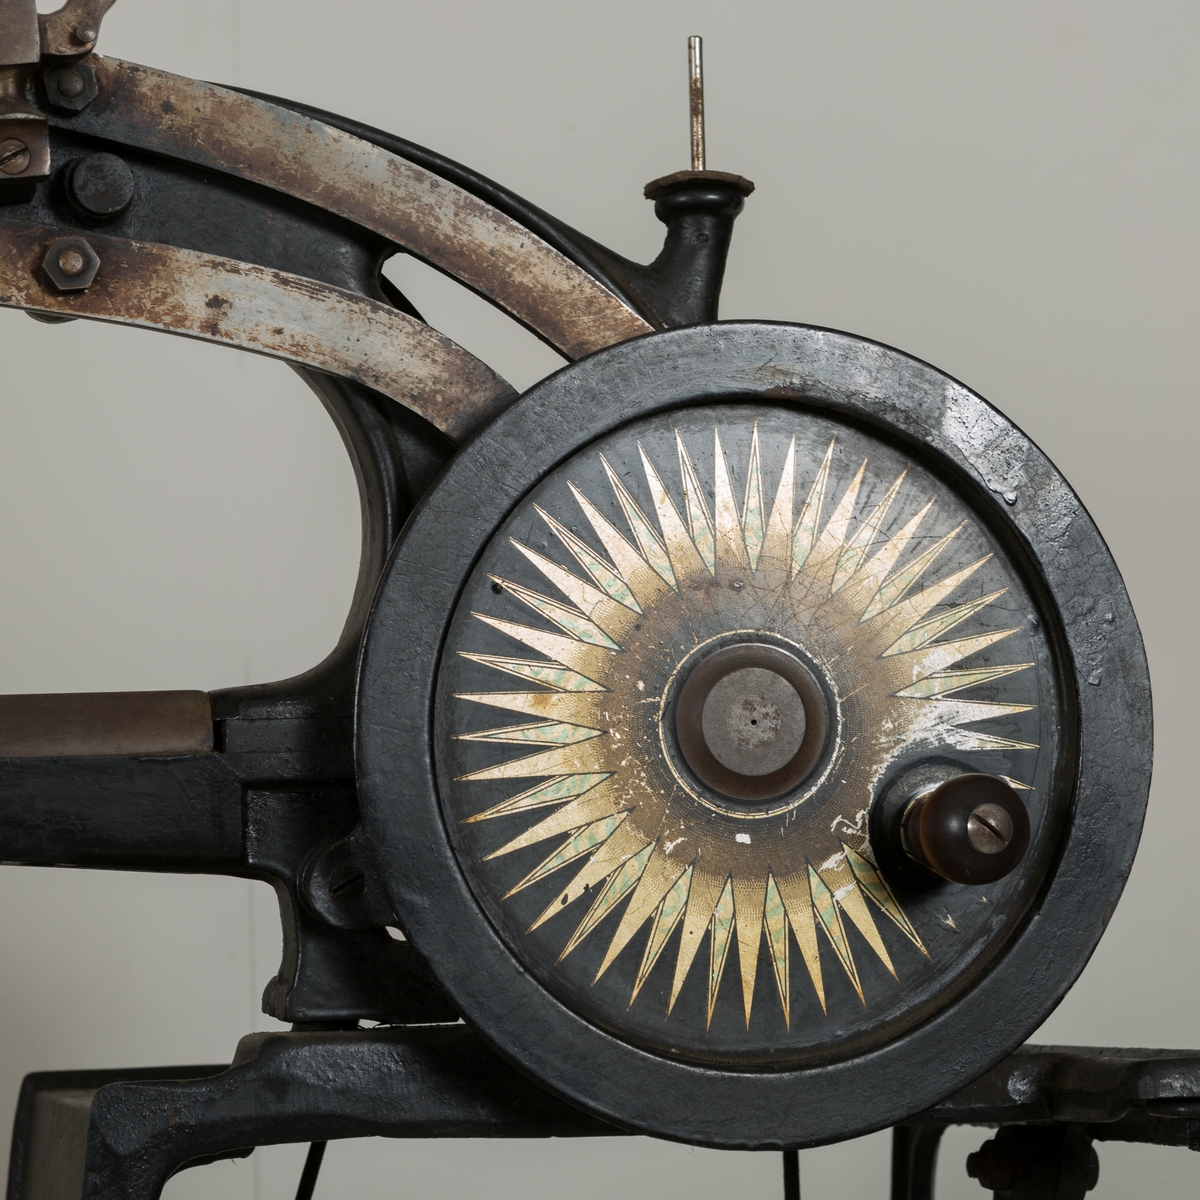 Pedaldrevet symaskin for en skomaker